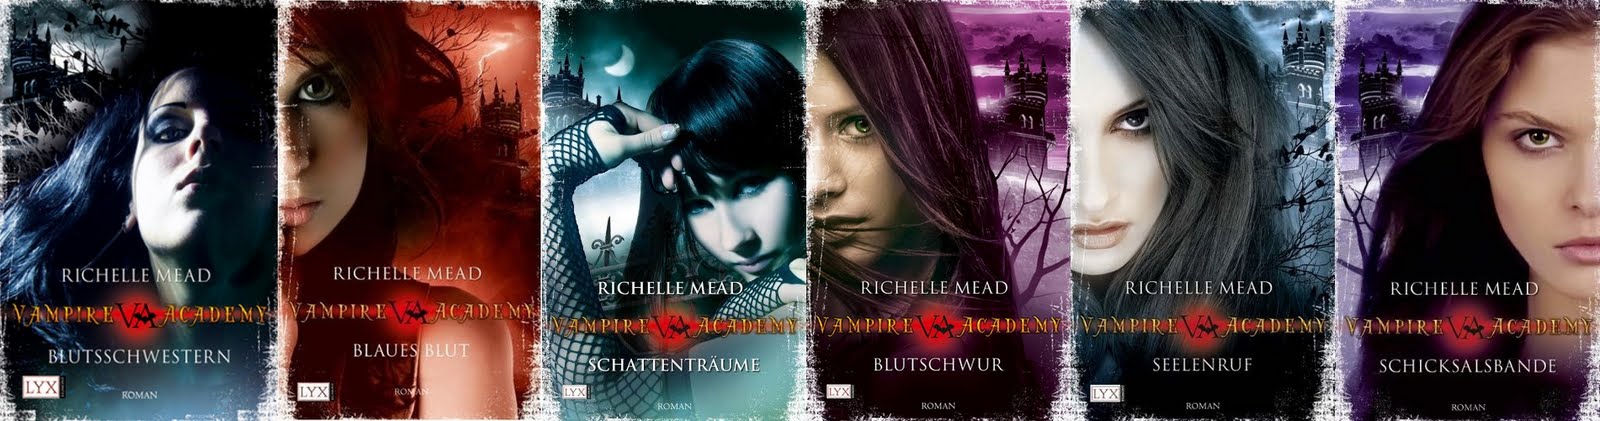 Damaris Liest Rezension Zu Vampire Academy 6 Schicksalsbande Von Richelle Mead